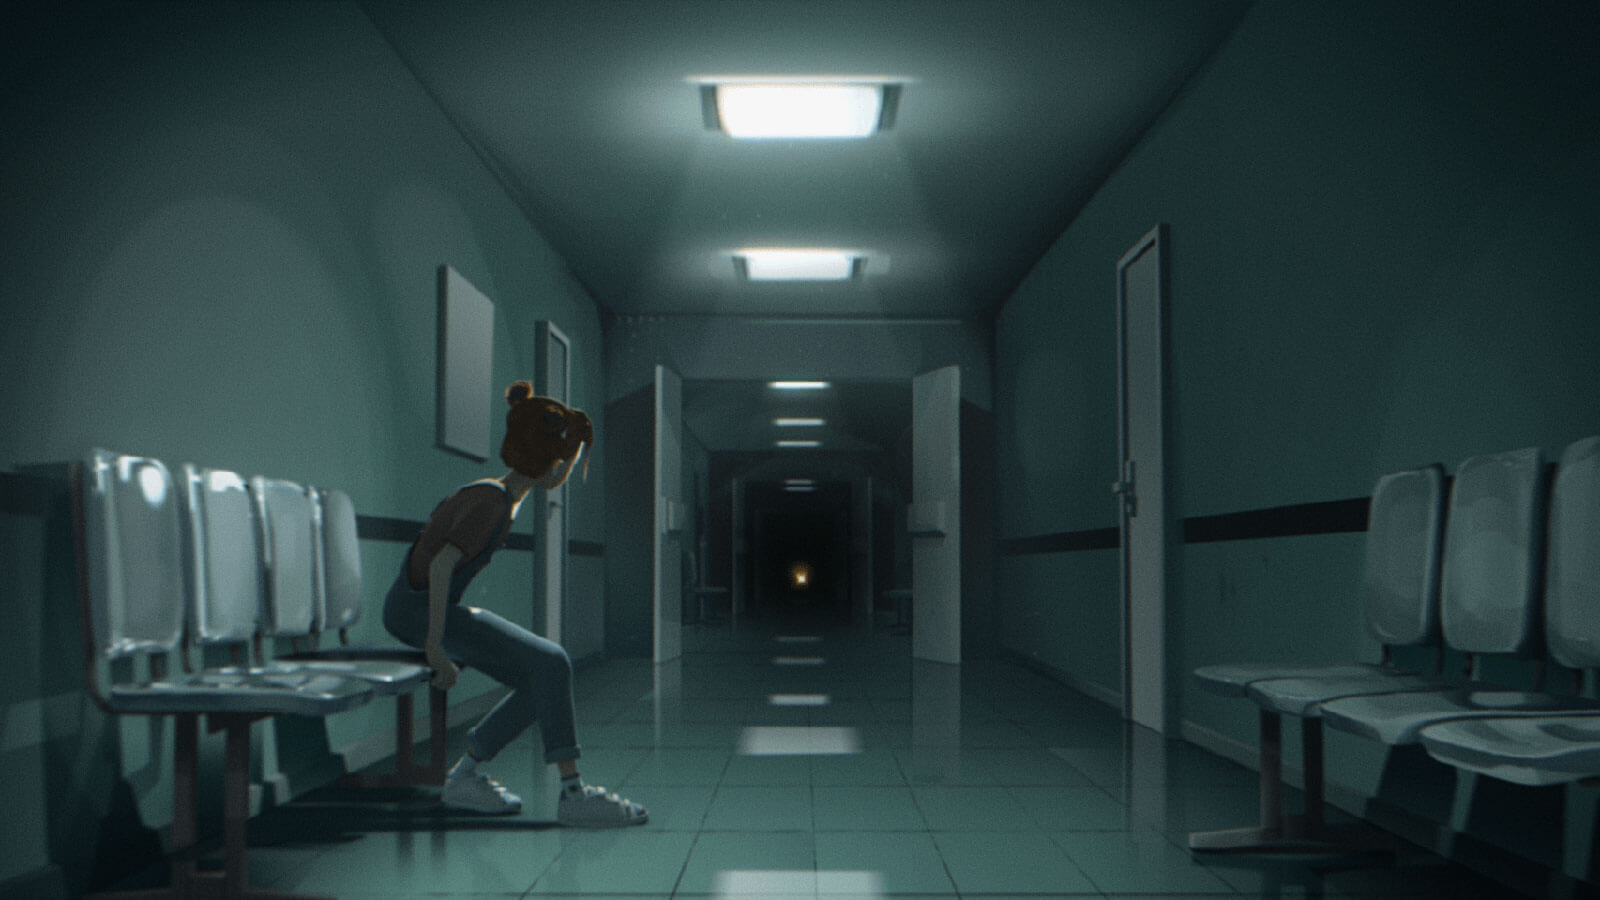 Una chica está sentada en el lado de un pasillo médico, con la mirada fija en el extremo distante.